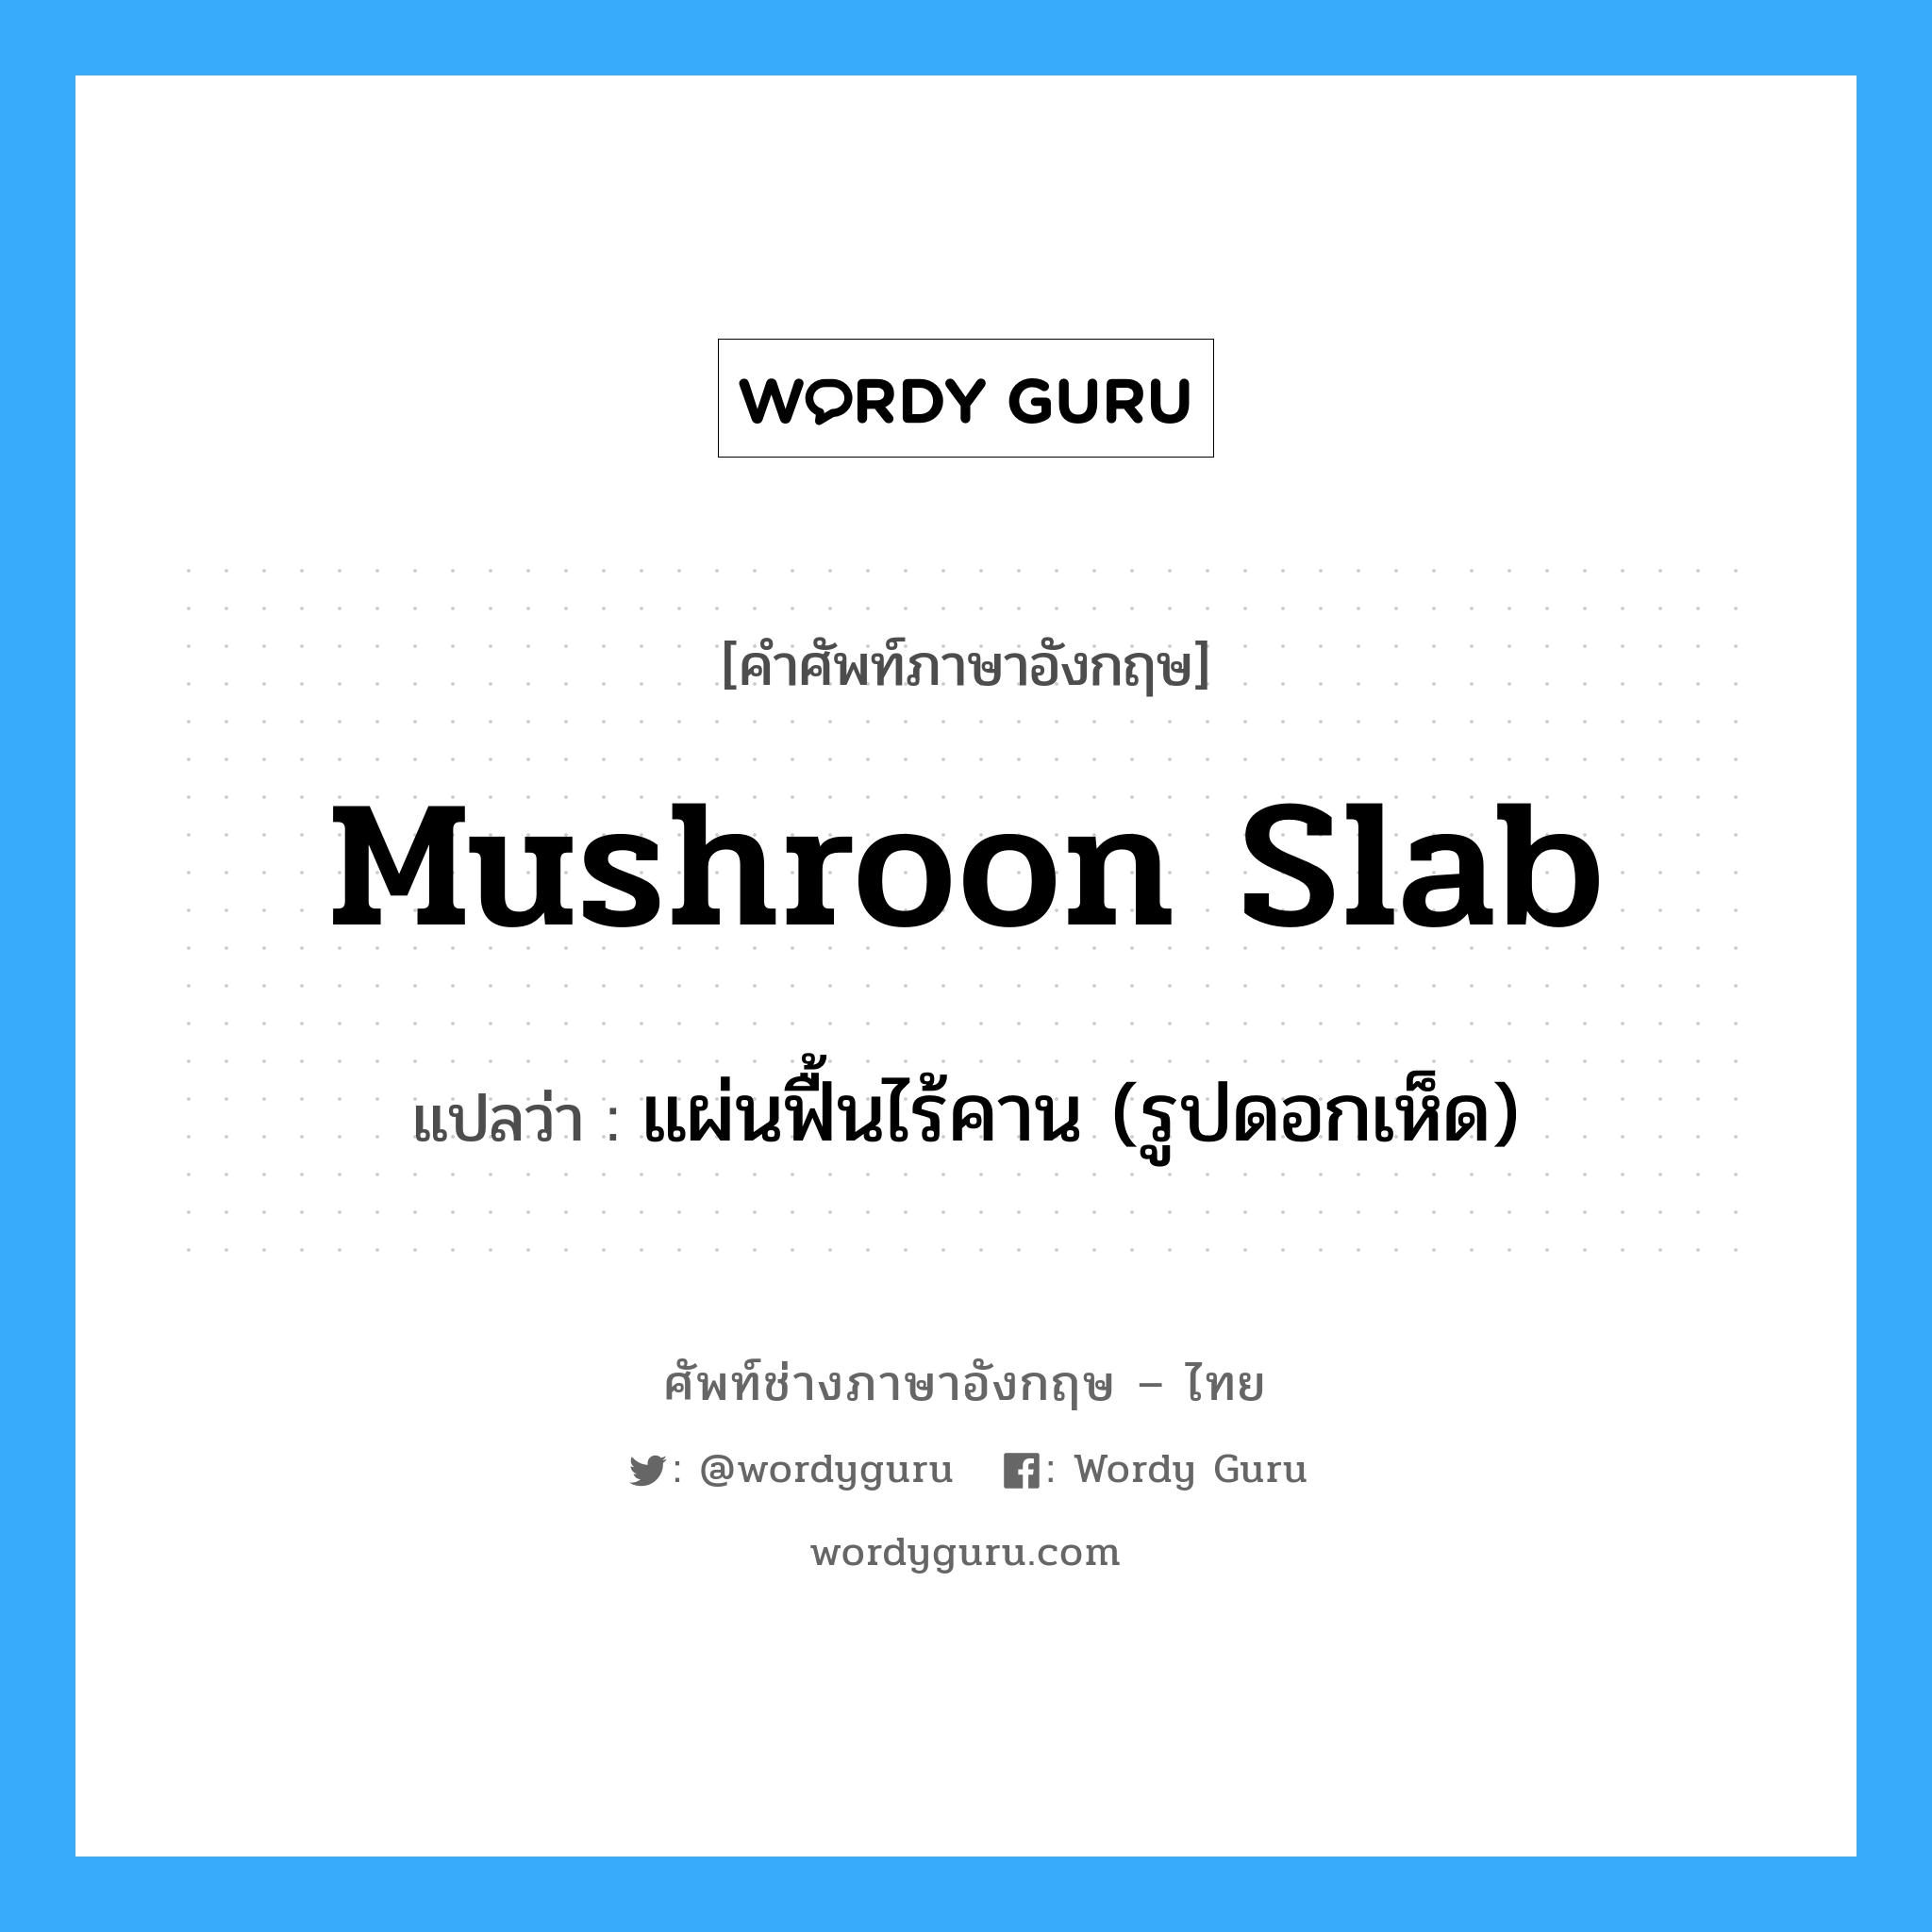 mushroon slab แปลว่า?, คำศัพท์ช่างภาษาอังกฤษ - ไทย mushroon slab คำศัพท์ภาษาอังกฤษ mushroon slab แปลว่า แผ่นฟื้นไร้คาน (รูปดอกเห็ด)